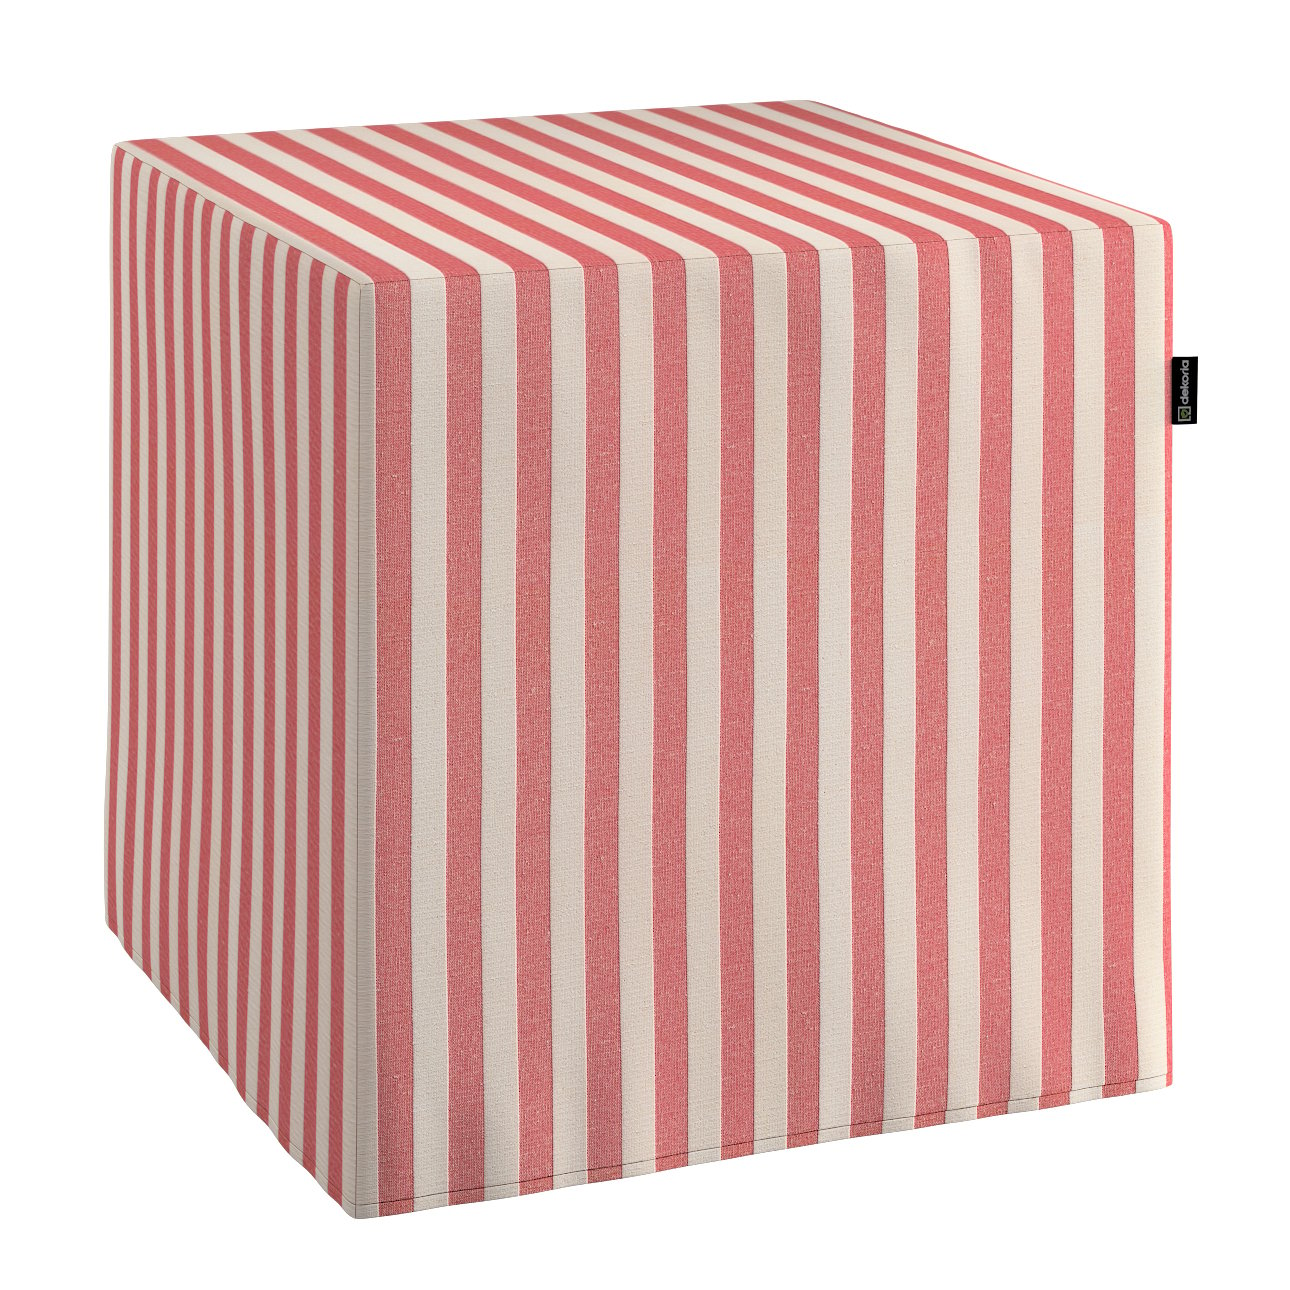 Dekoria Sedák Cube - kostka pevná 40x40x40, červeno - bílá - pruhy, 40 x 40 x 40 cm, Quadro, 136-17